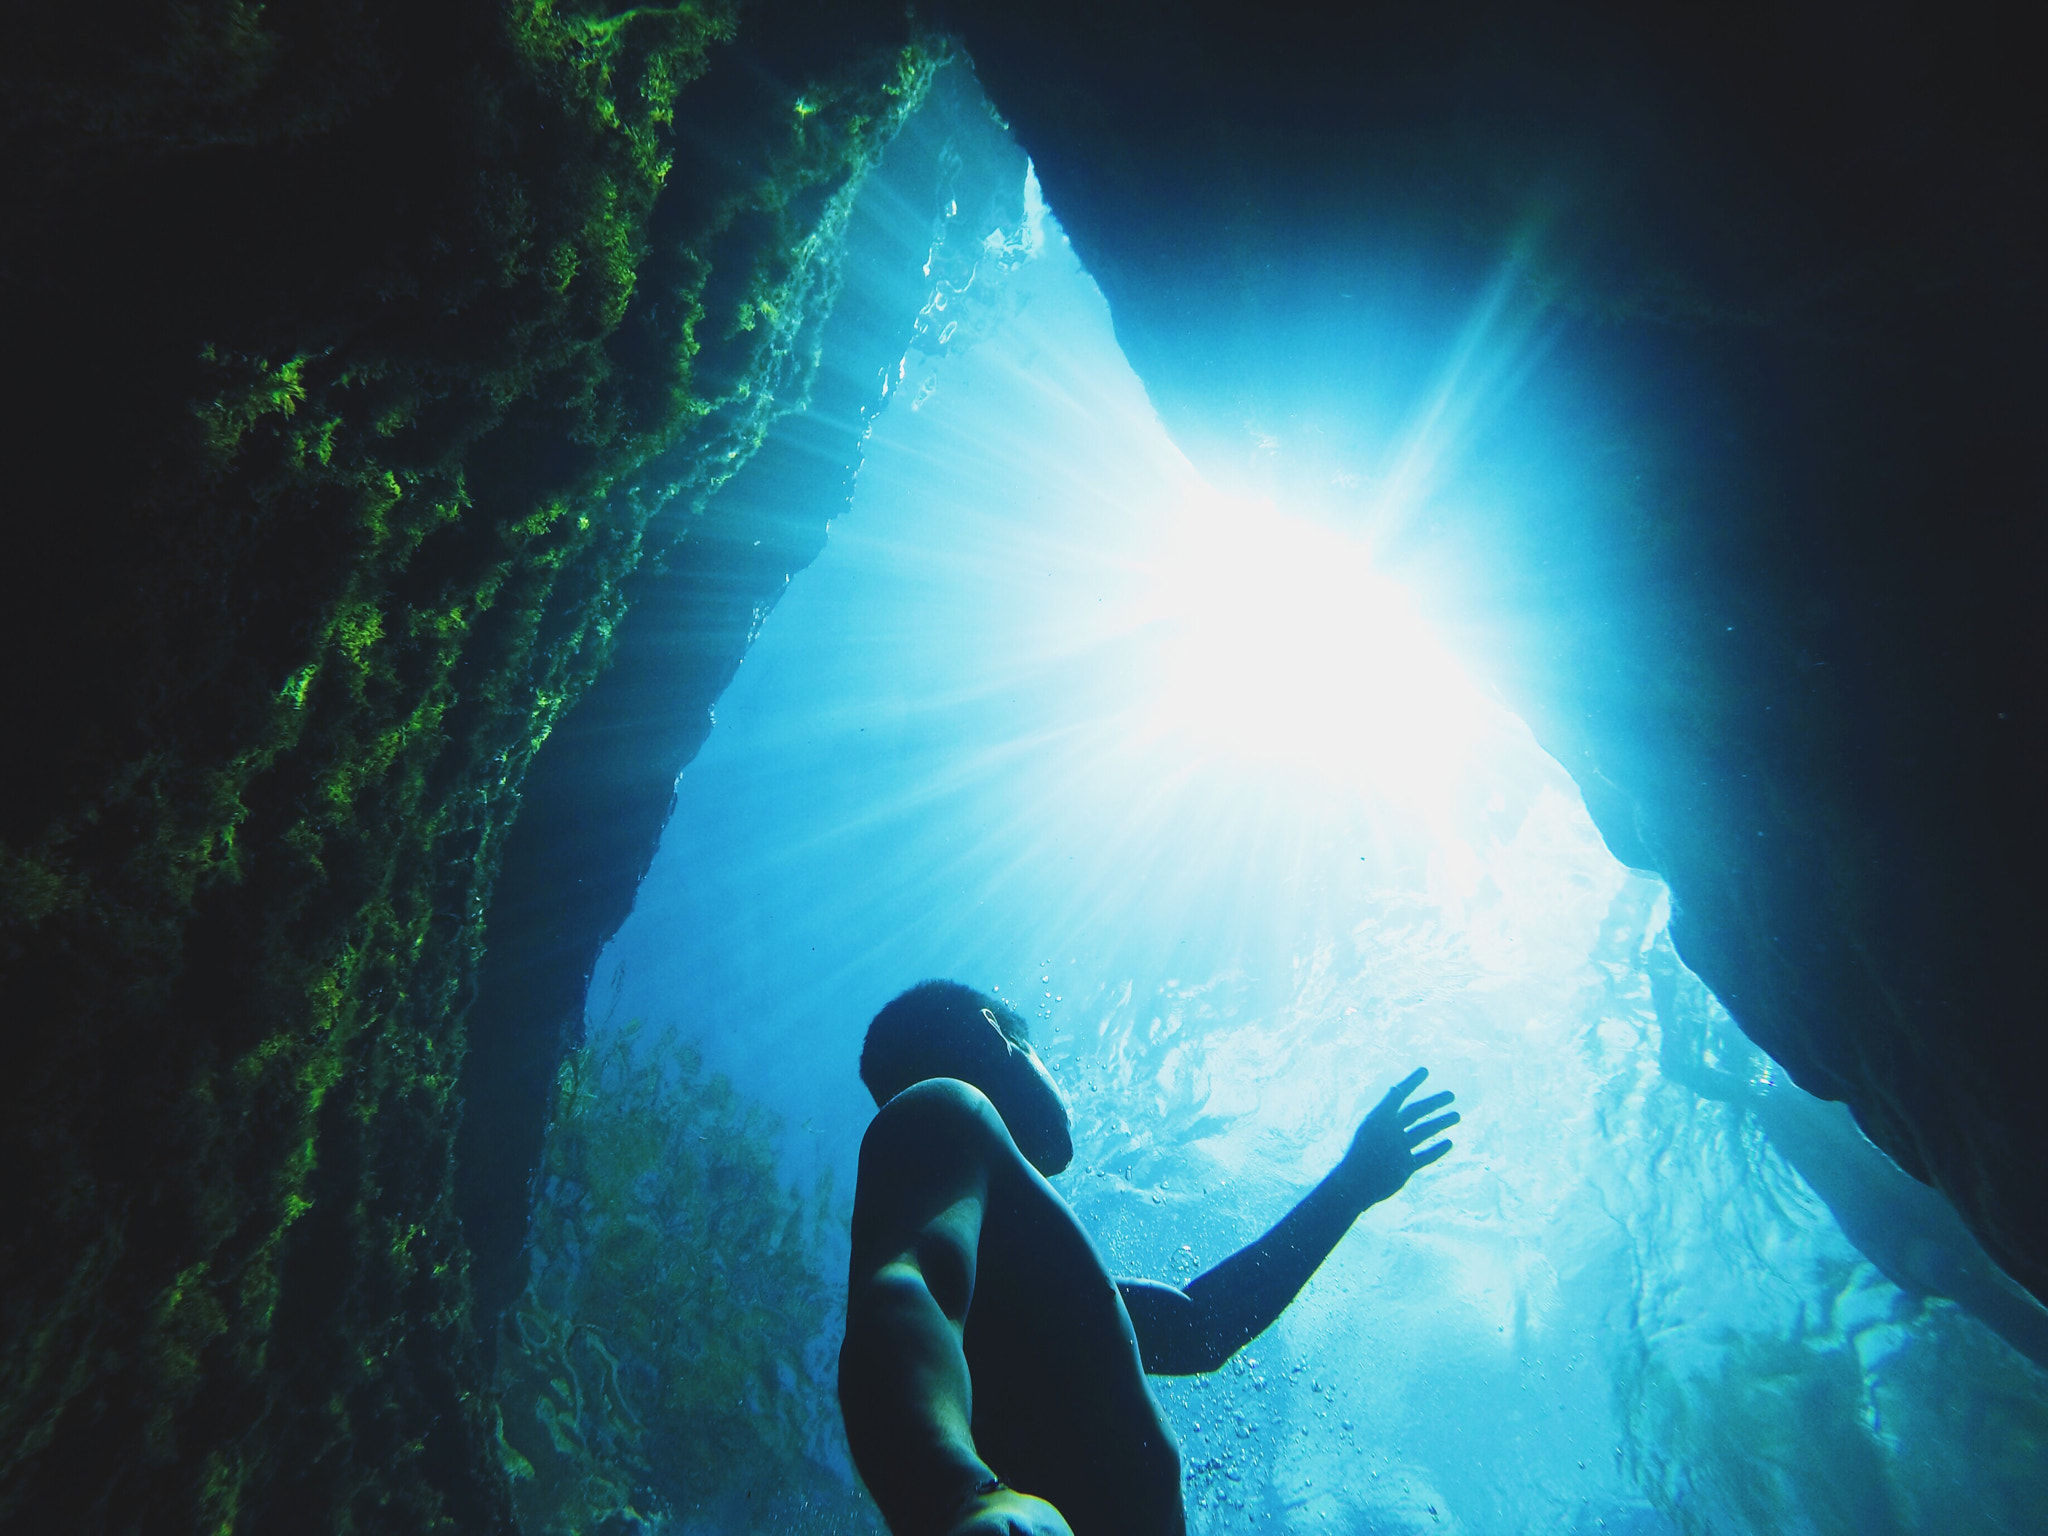 15 Photos that Explore Underwater Photography